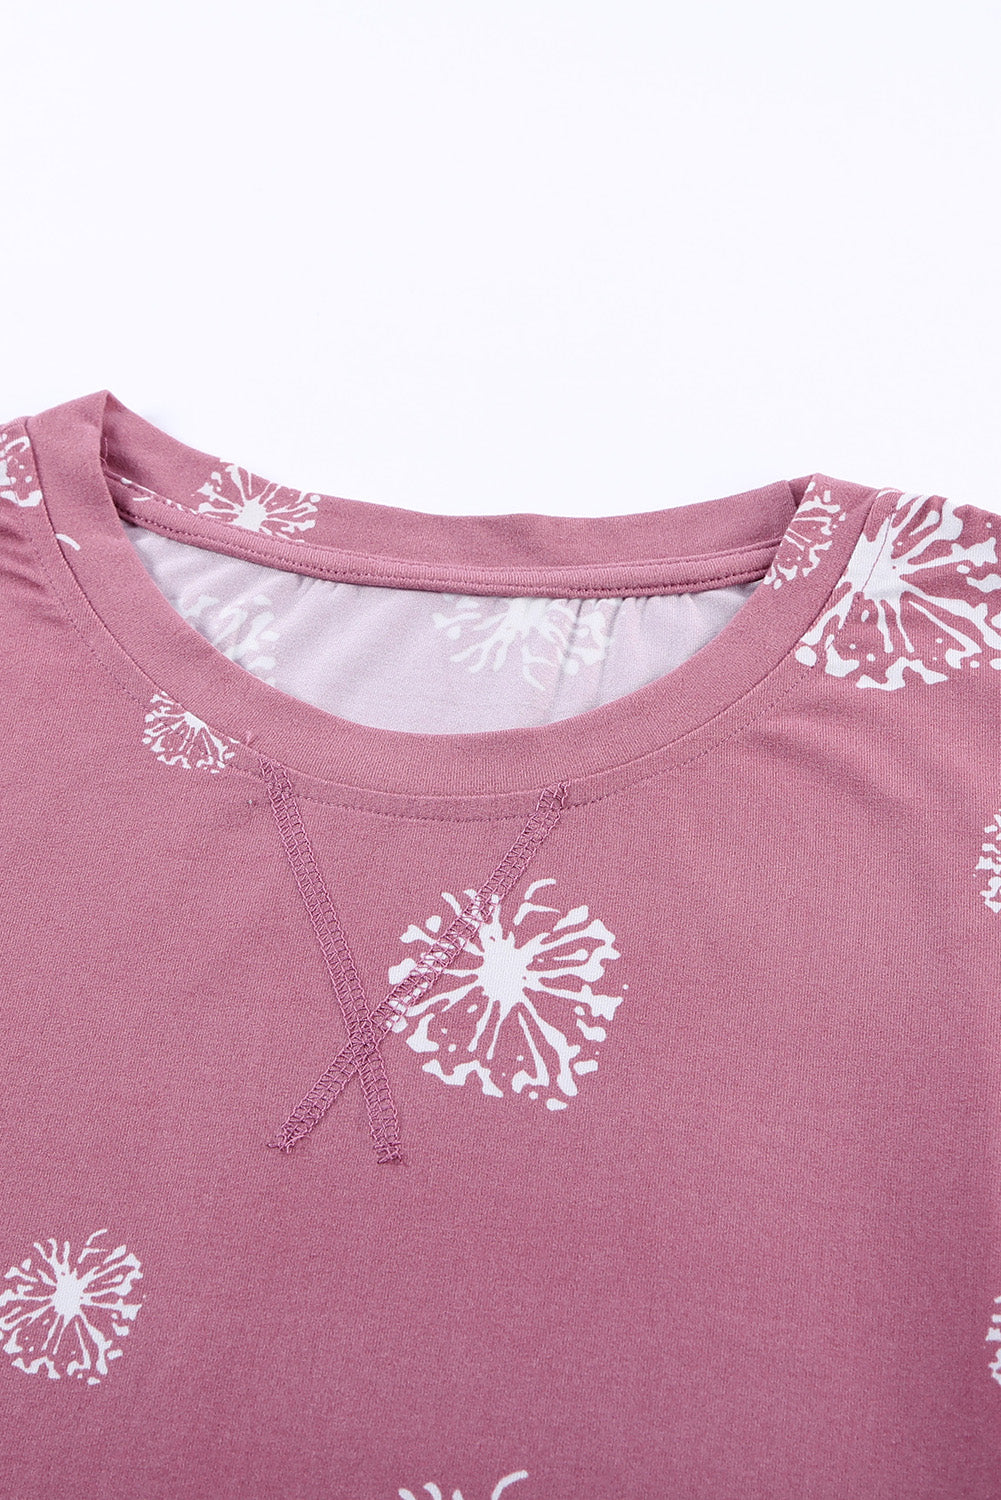 Rožnata majica z okroglim izrezom in potiskom regrata